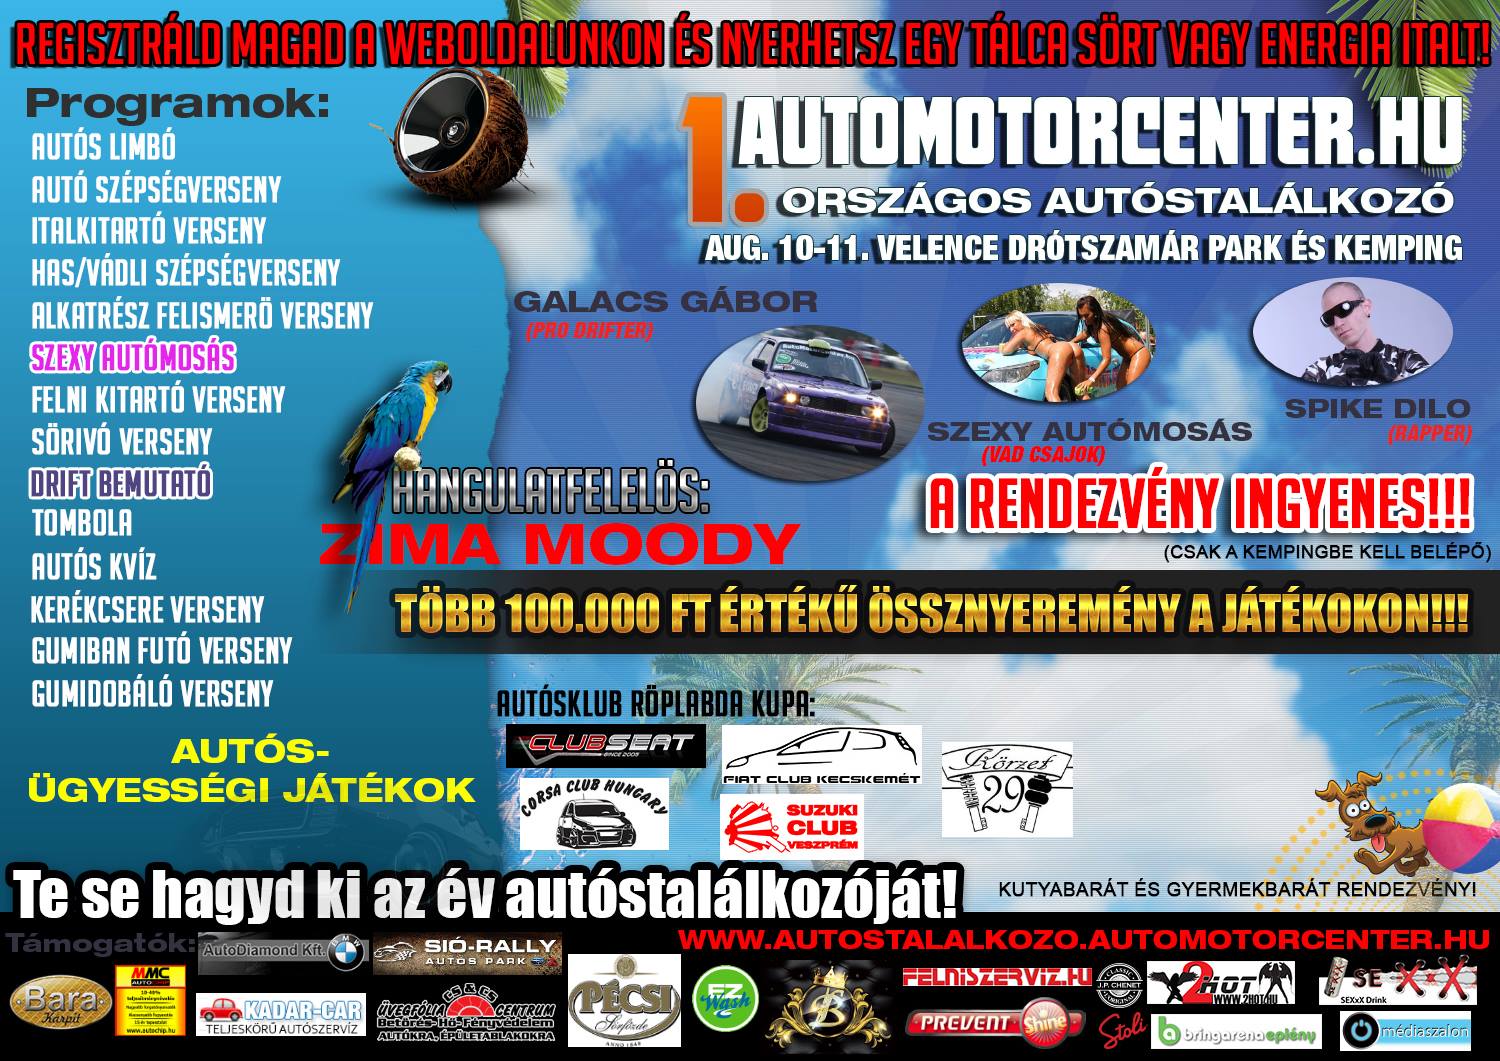 Augusztus 10-11-én megrendezésre kerül az I. AutoMotorCenter.hu Autóstalálkozó!